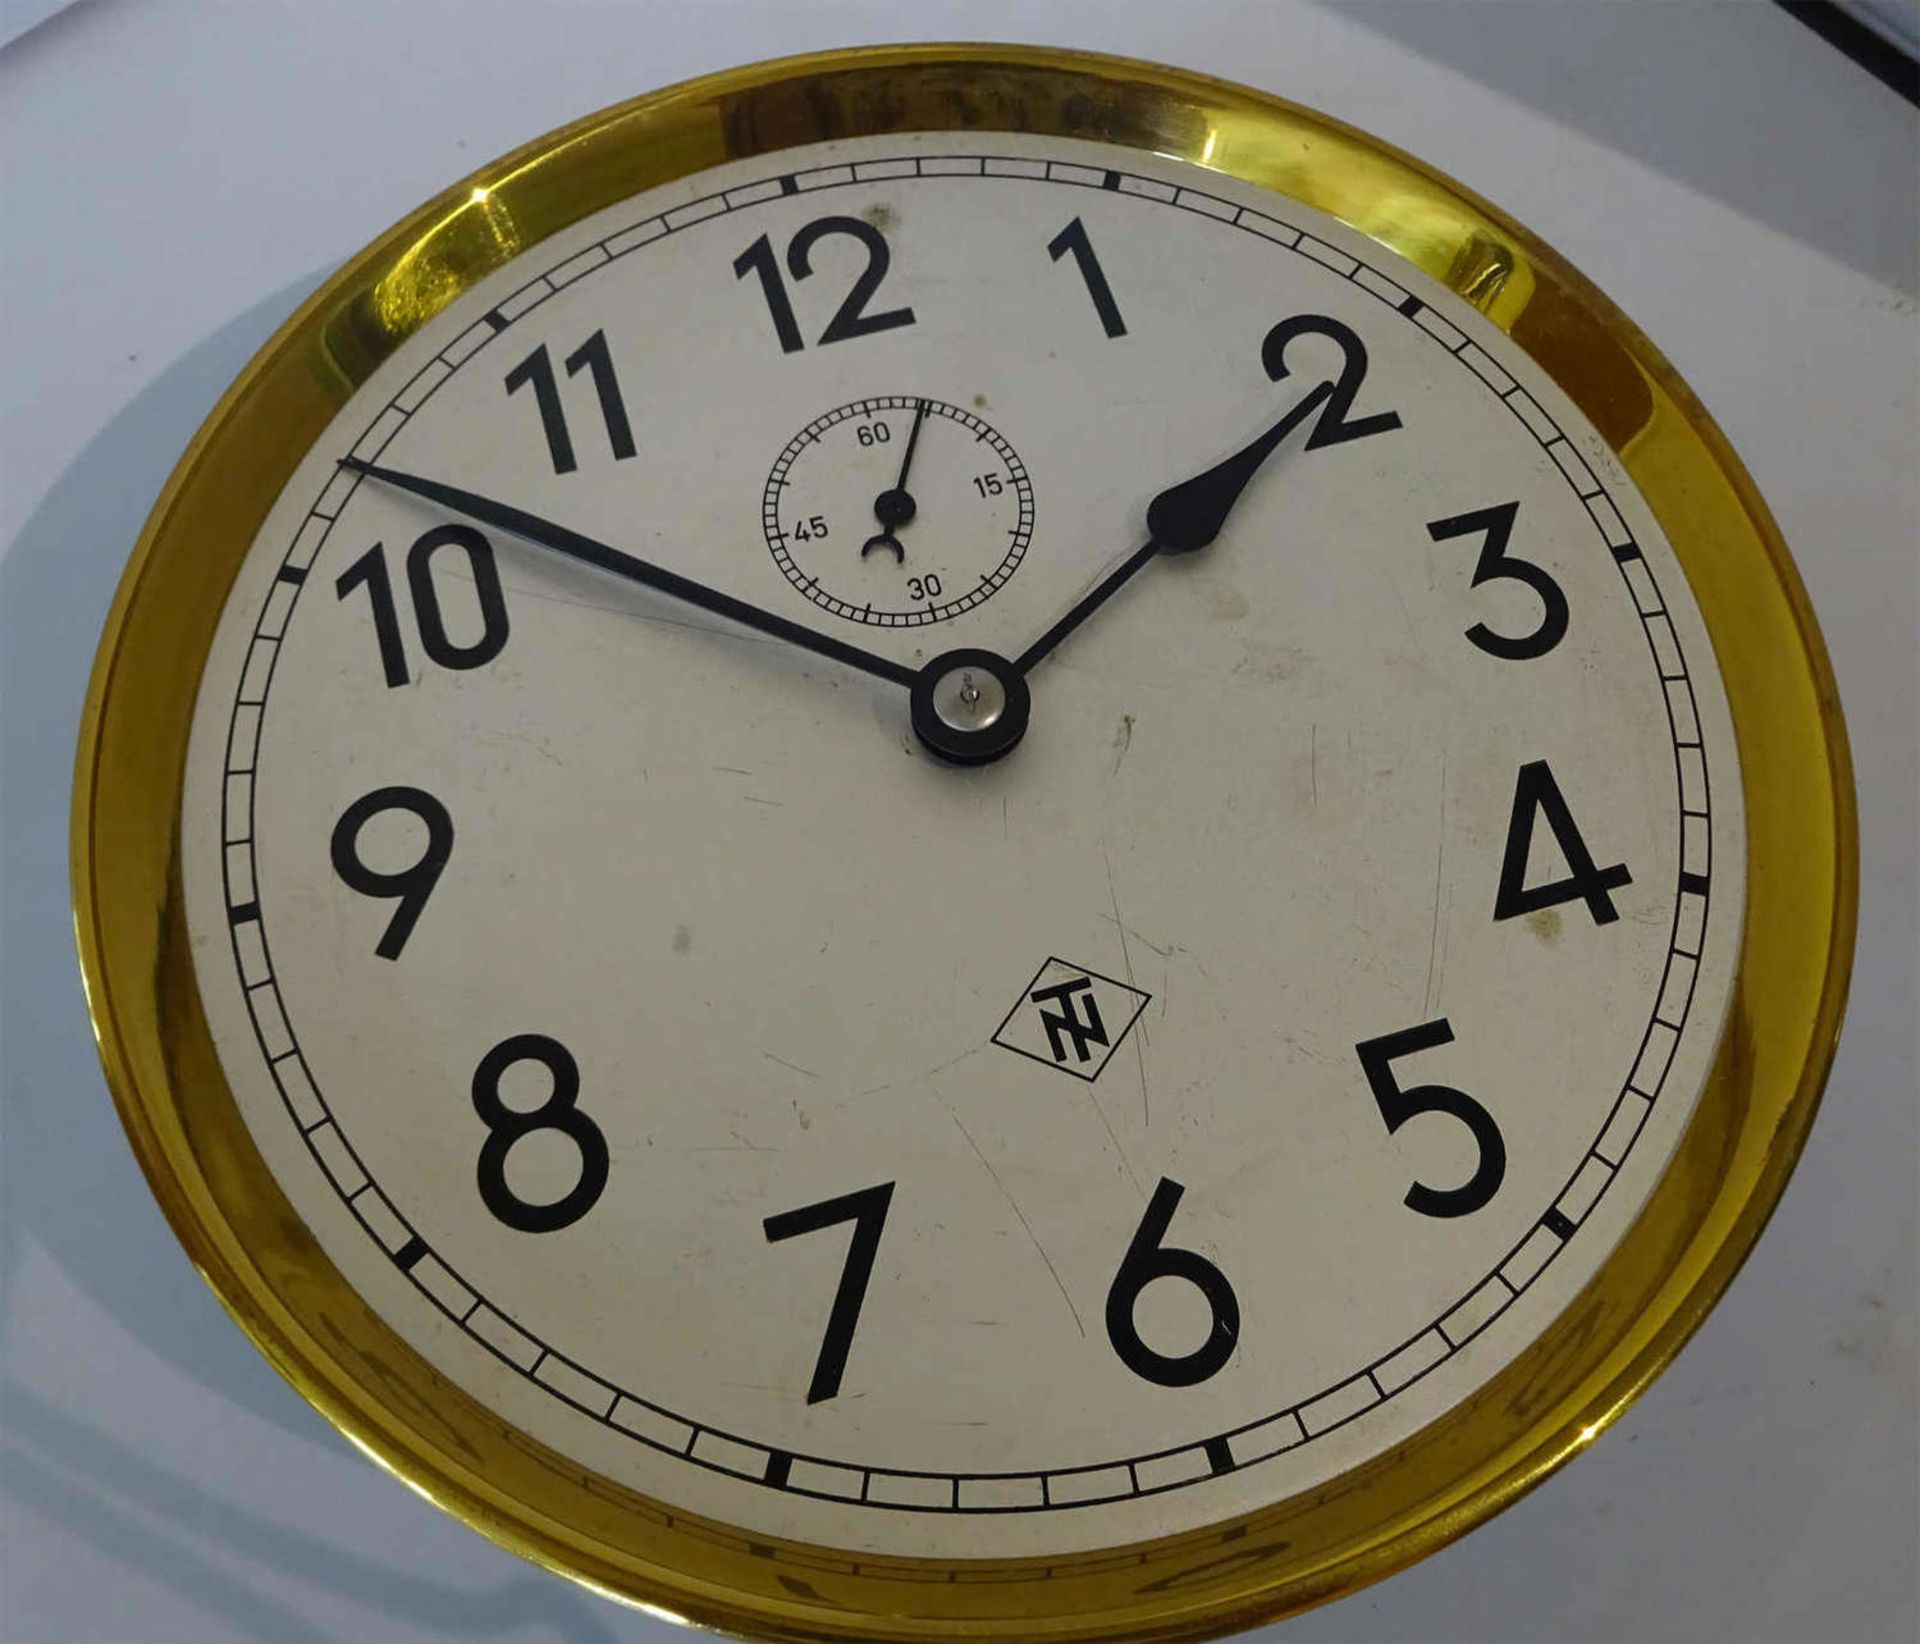 Uhrwerk Firma TN Werksuhr, Durchmesser 21 cmClockwork company TN works clock, diameter 21 cm